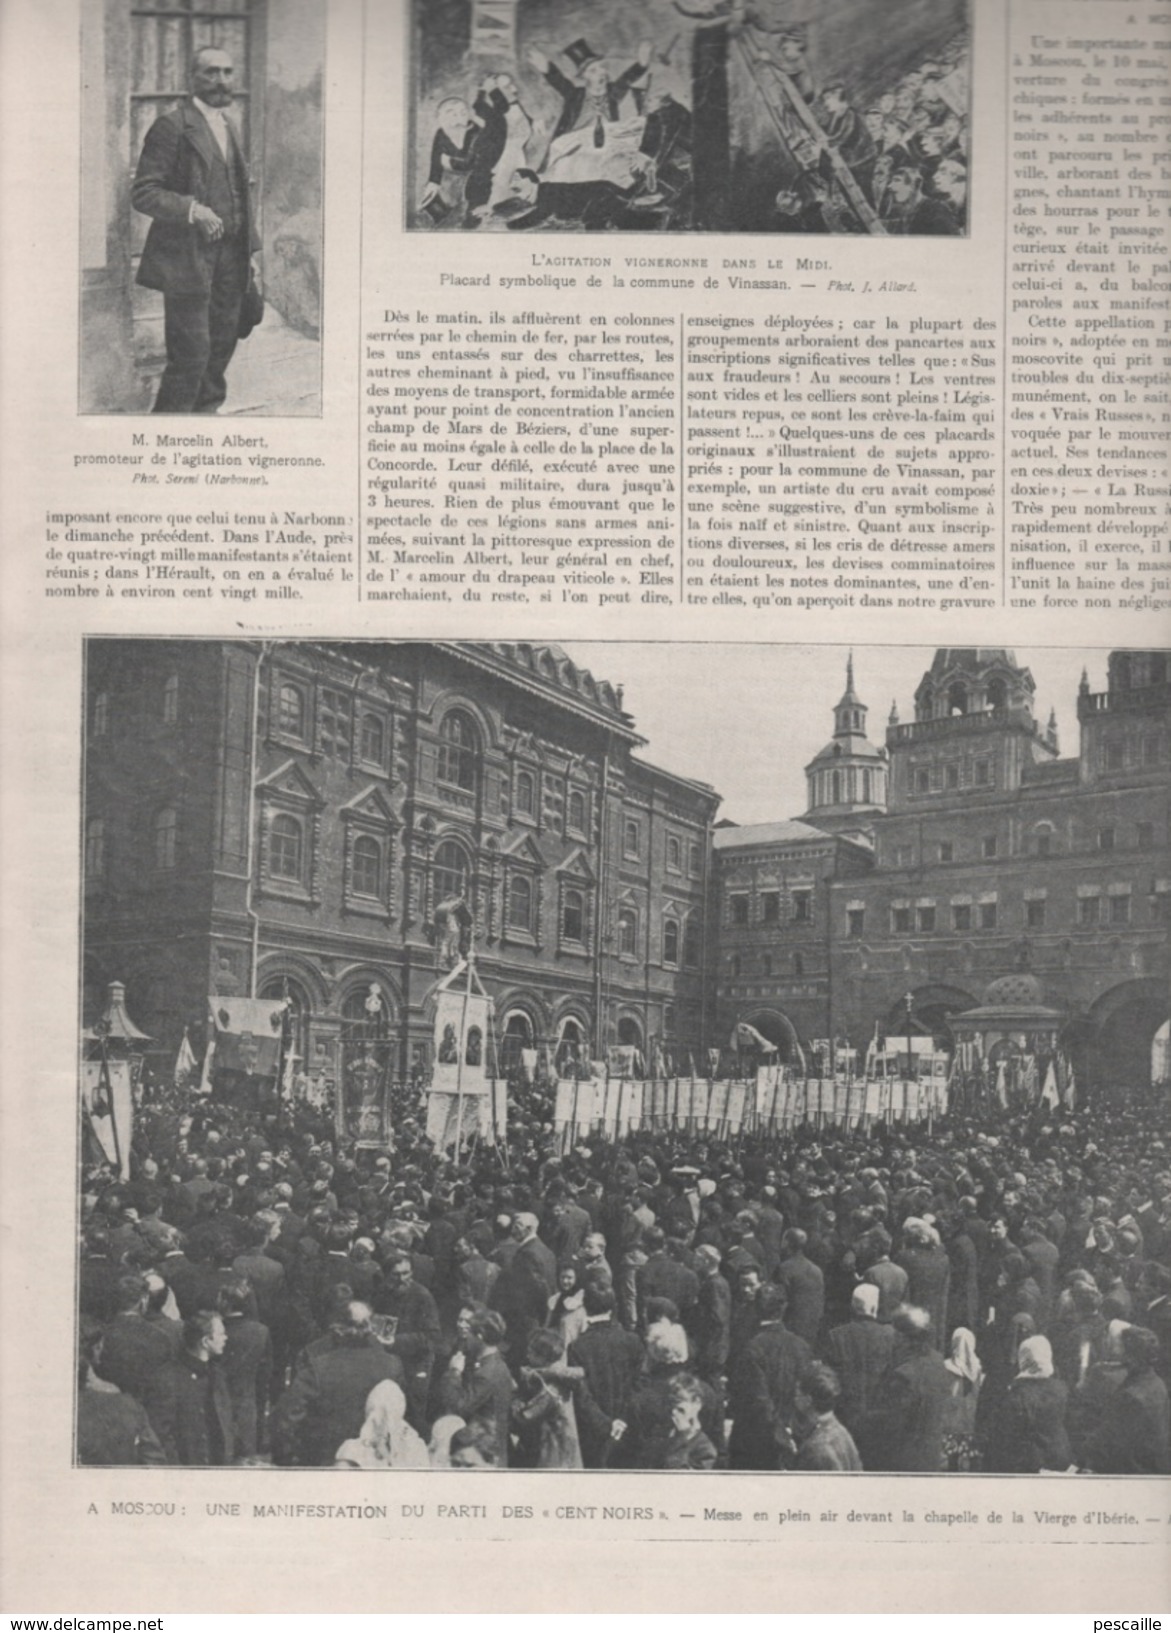 L'ILLUSTRATION 18 5 1907  BEZIERS - TSAREVITCH - SALONS 1907 - EXPOSITION COLONIALE VINCENNES - METZ - LUSSE - VINASSAN